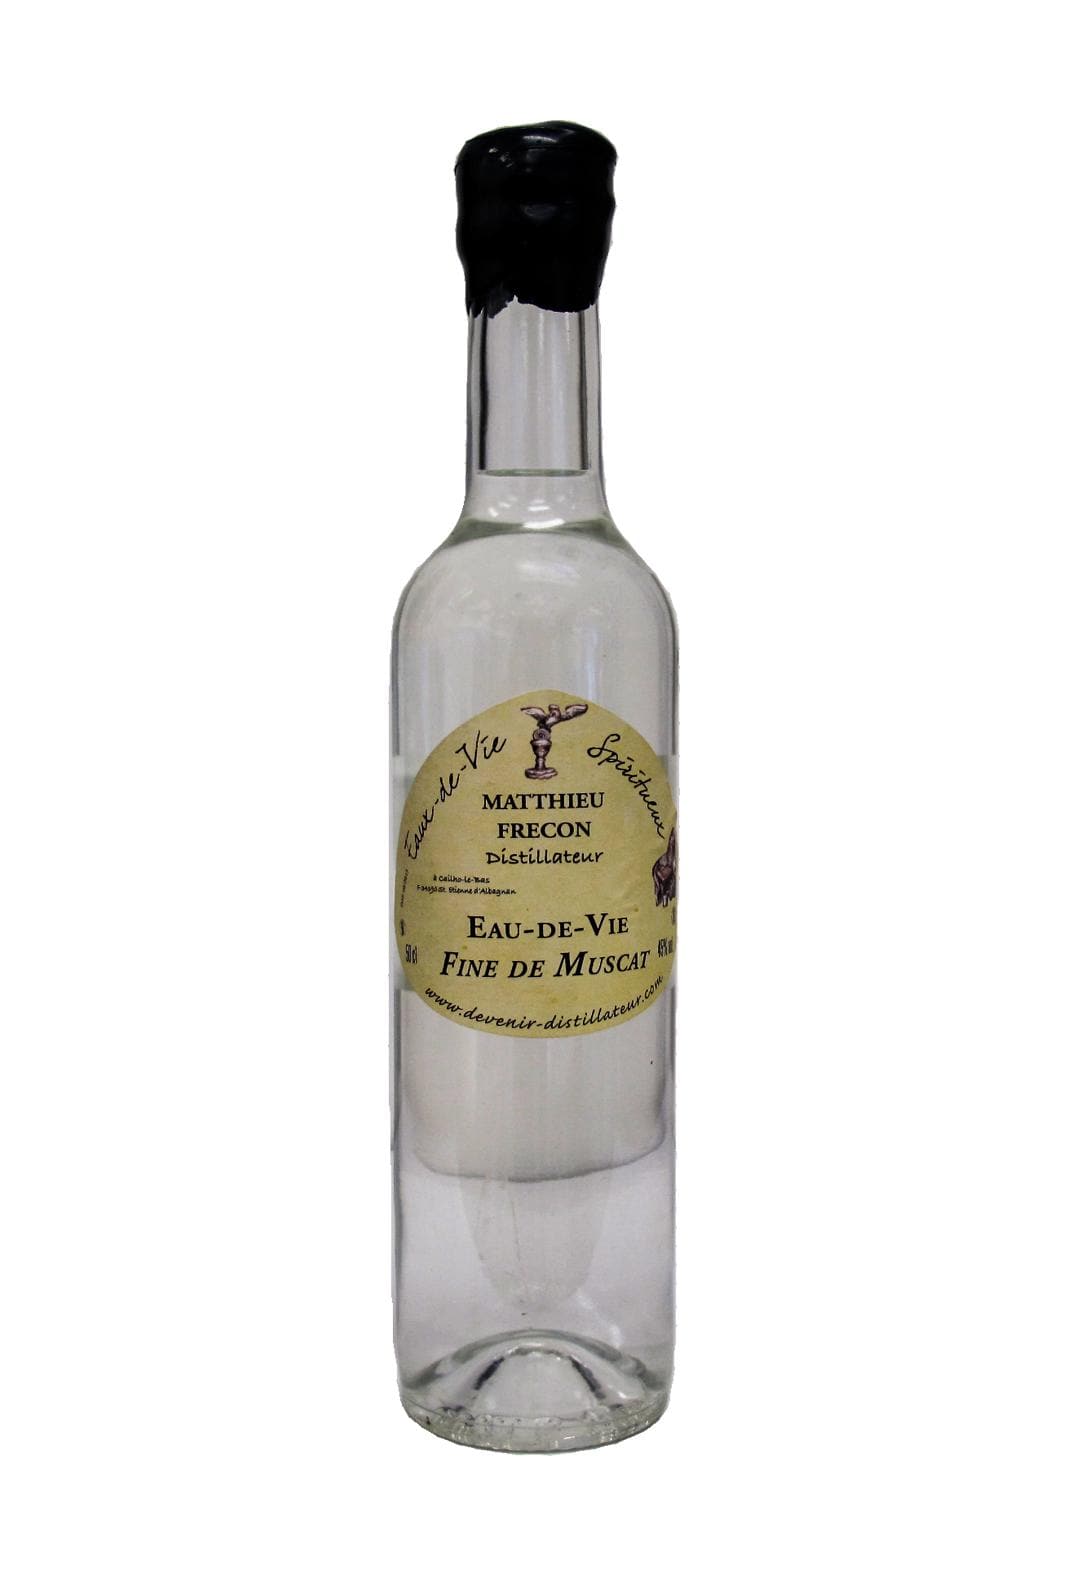 Bouilleur Fine de Muscat 5 years 45% 500ml | Liqueurs | Shop online at Spirits of France